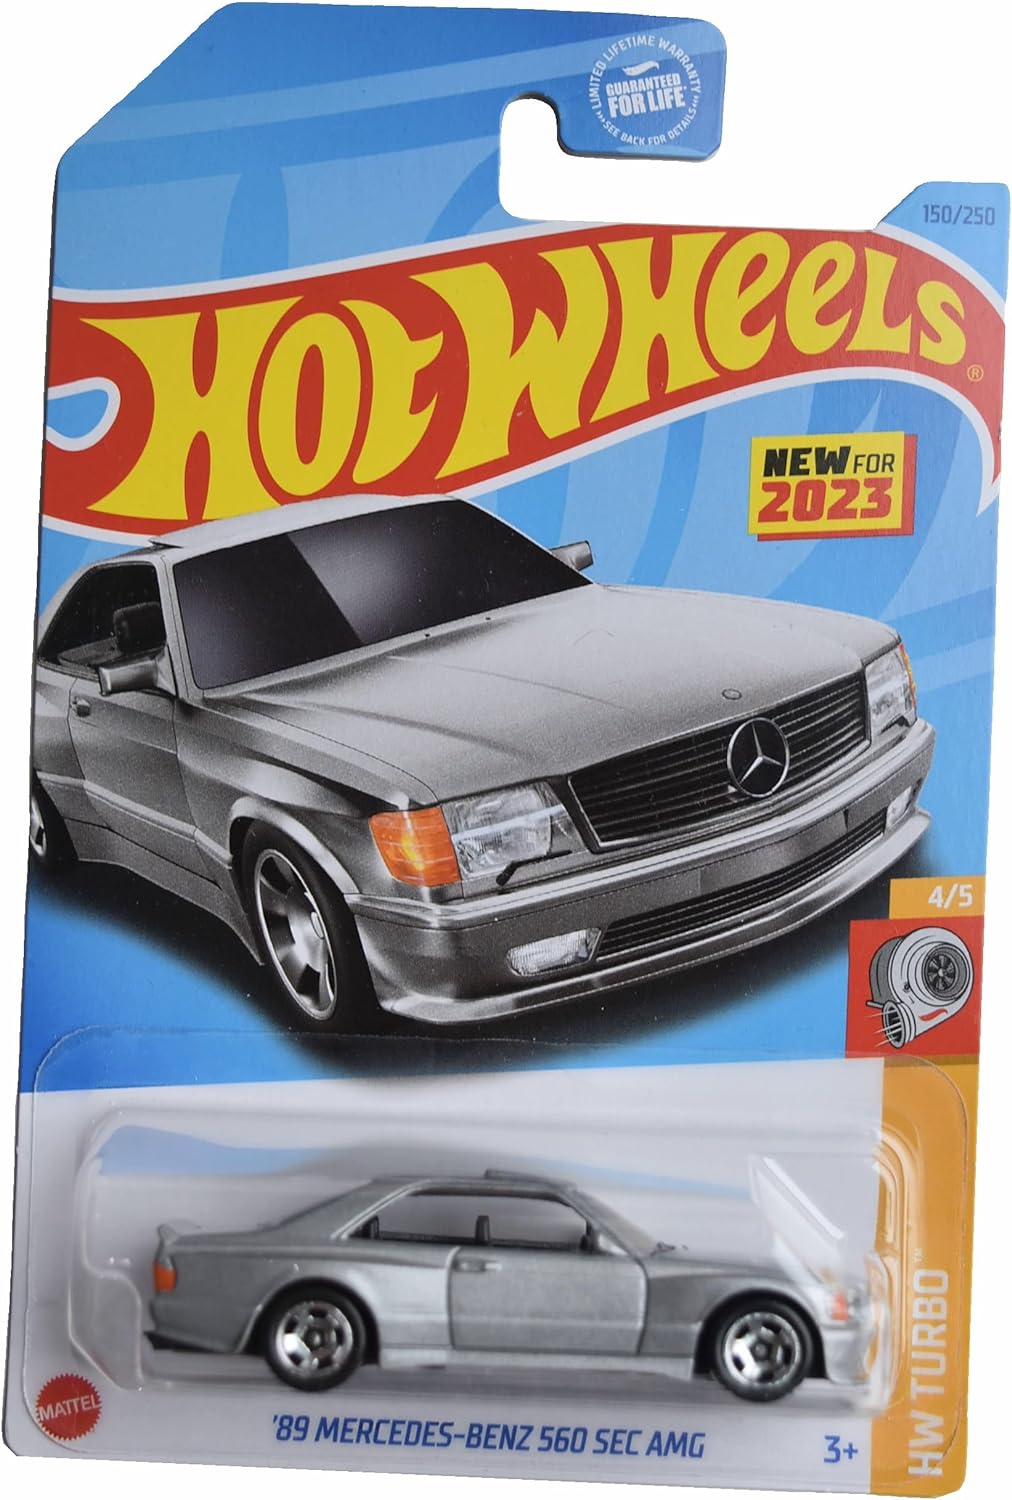 Hot Wheels '89 Mercedes-Benz 560 SEC AMG HW Turbo 150/250